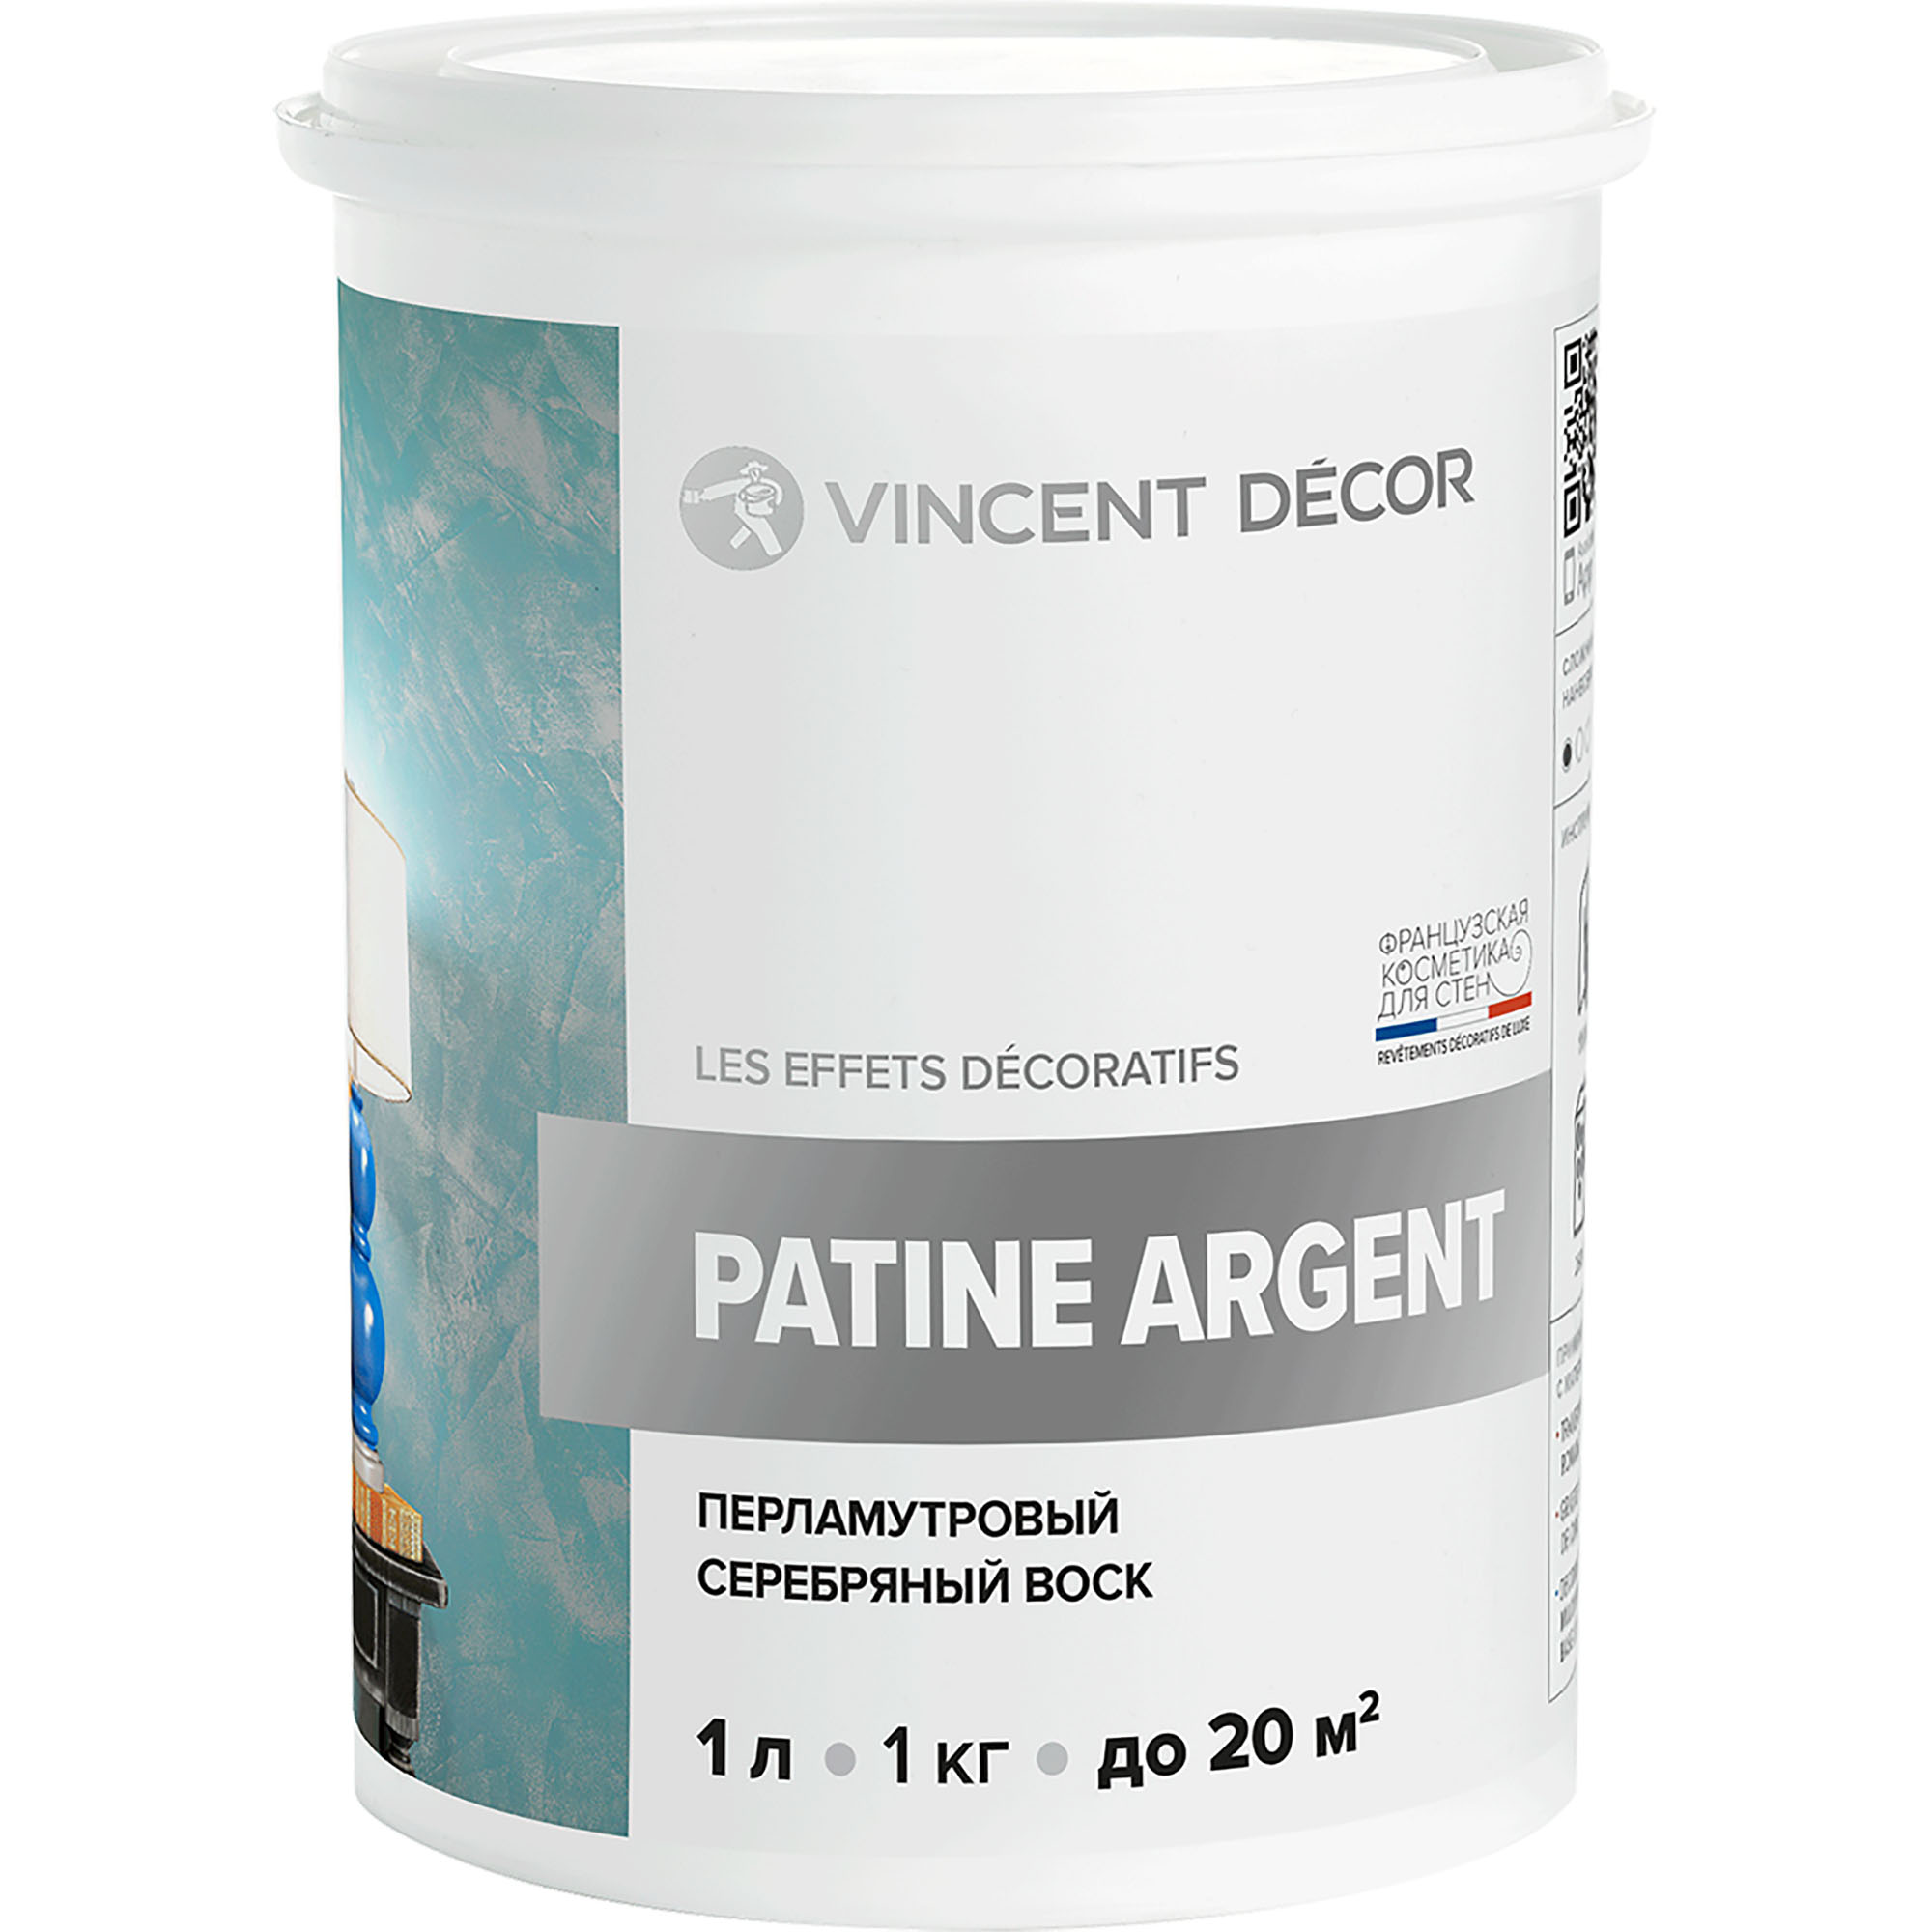 Перламутровый серебряный воск Vincent Decor Patine Argent для декоративных покрытий 1 кг воск защитный vincent decor cera realta для известковых декоративных покрытий 1 л